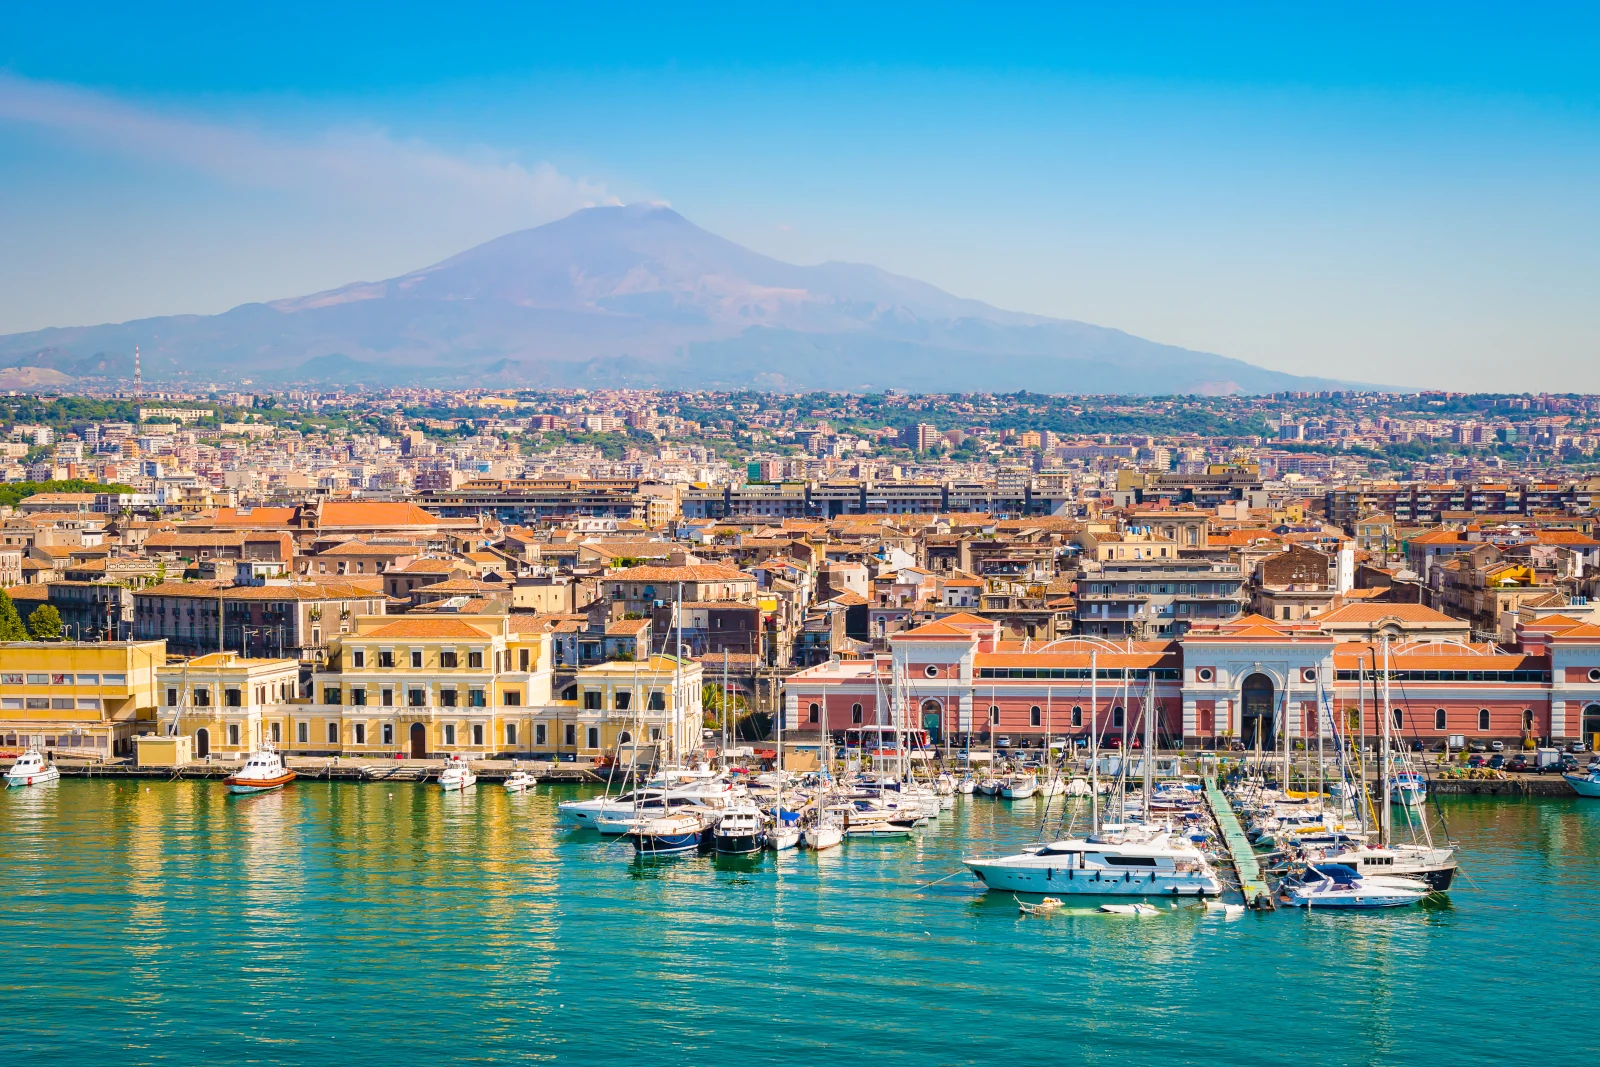 Schöne Aussicht auf den Kreuzfahrthafen von Catania mit rauchendem Vulkan Ätna im Hintergrund